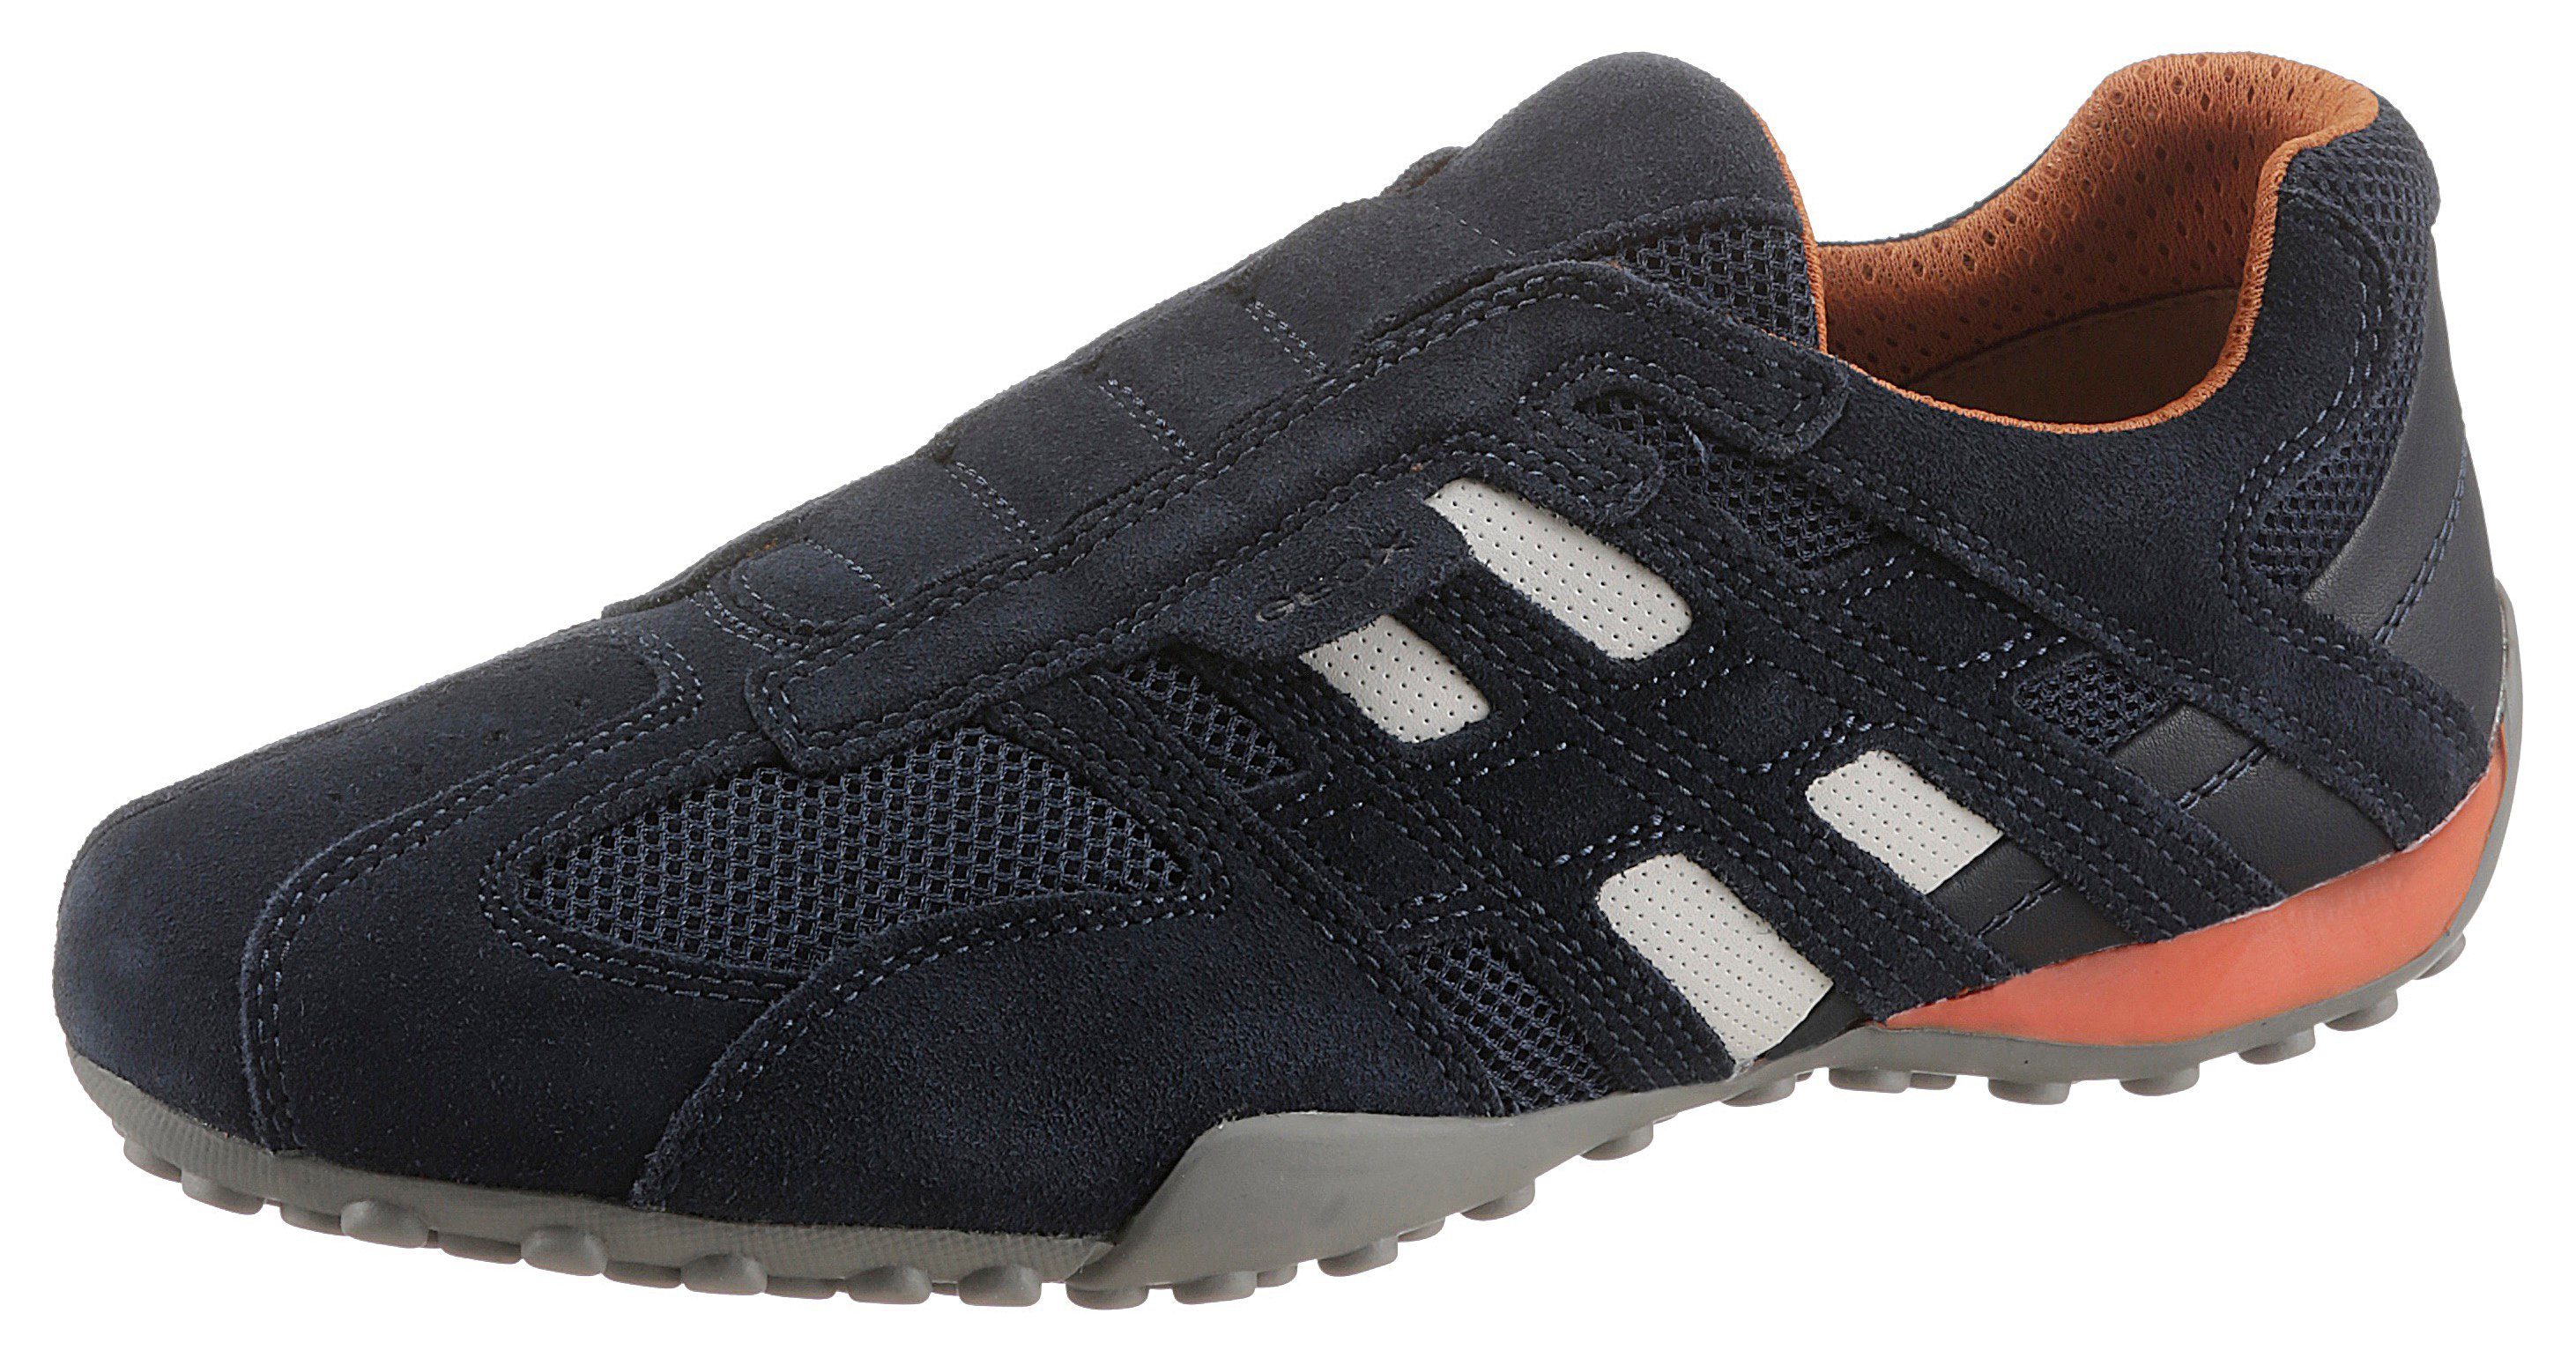 Geox »Snake« Sneaker im Materialmix mit Geox Spezial Membrane online kaufen  | OTTO